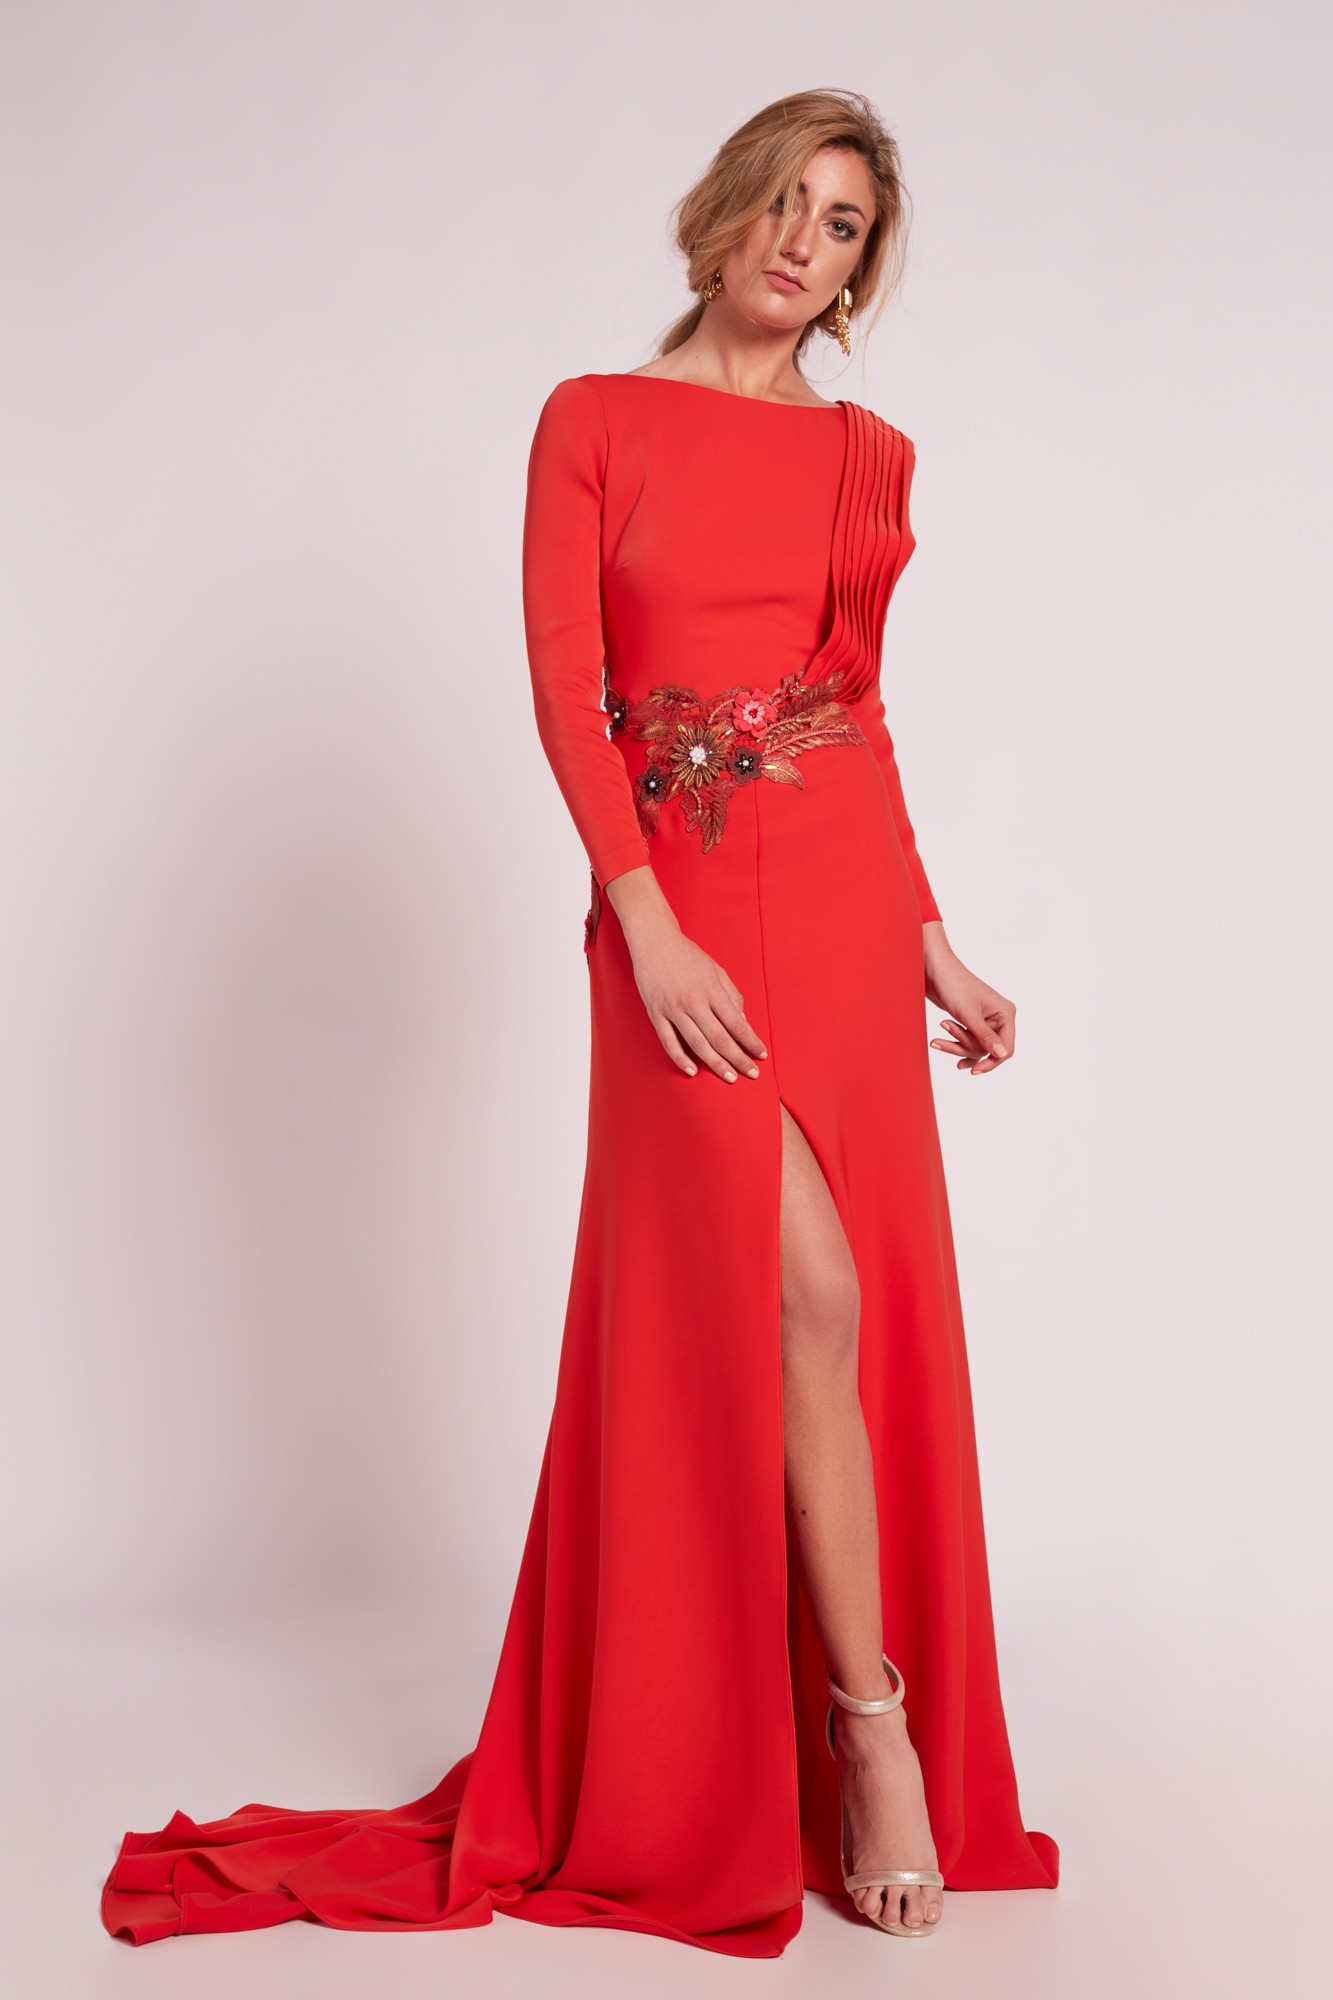 Vestido largo rojo con abertura y apliques - Avance 2020